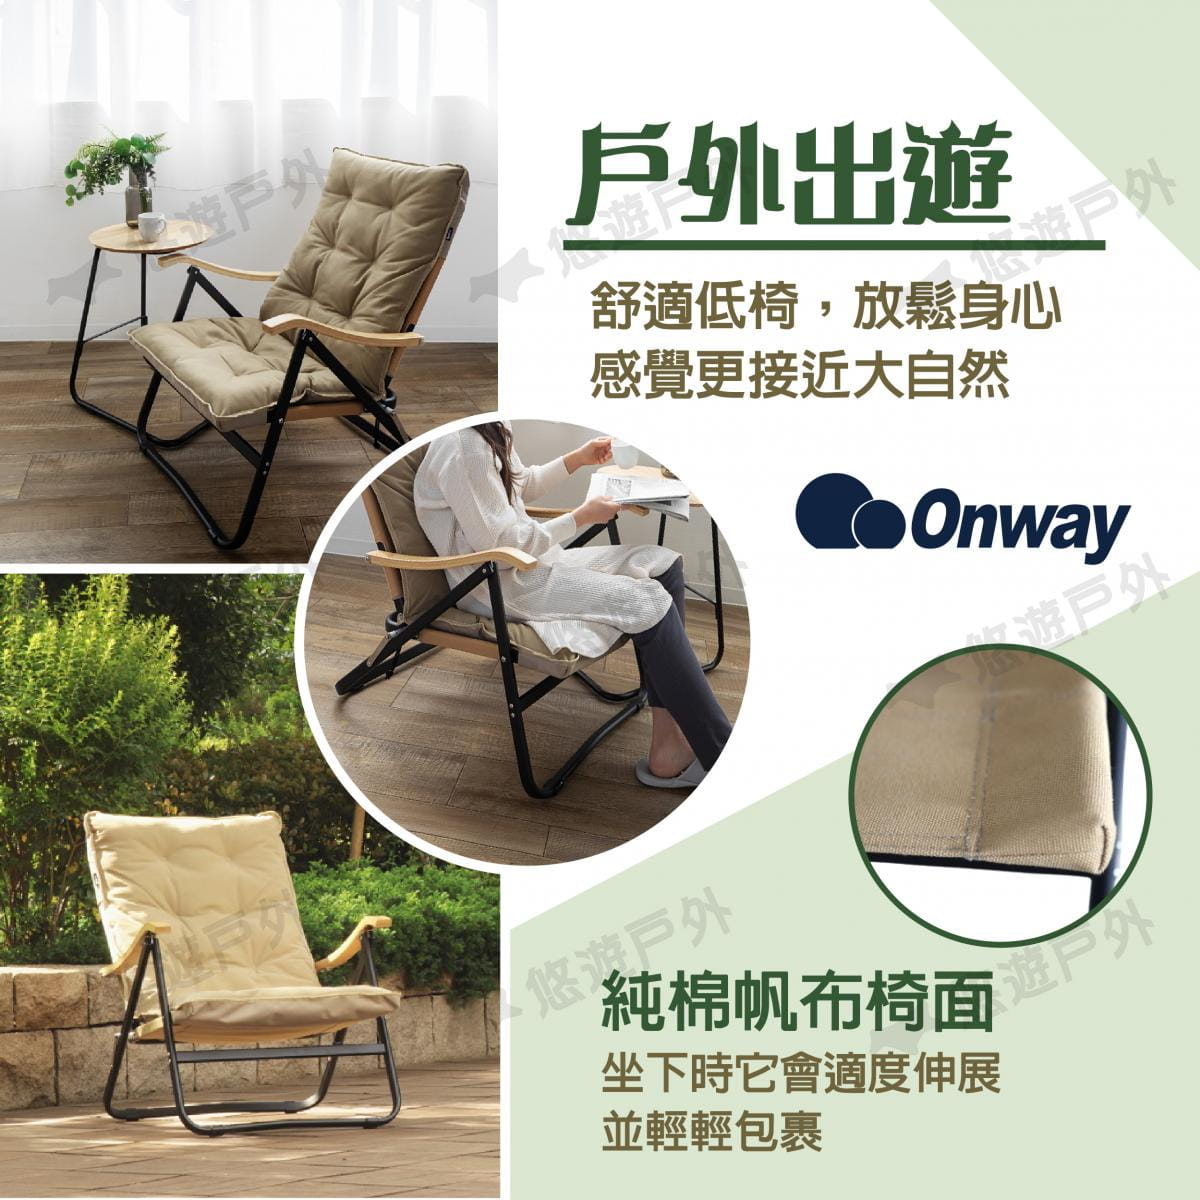 【ONWAY】舒適木質扶手低椅升級版 OW-61BD-BMPLUS (悠遊戶外) 5